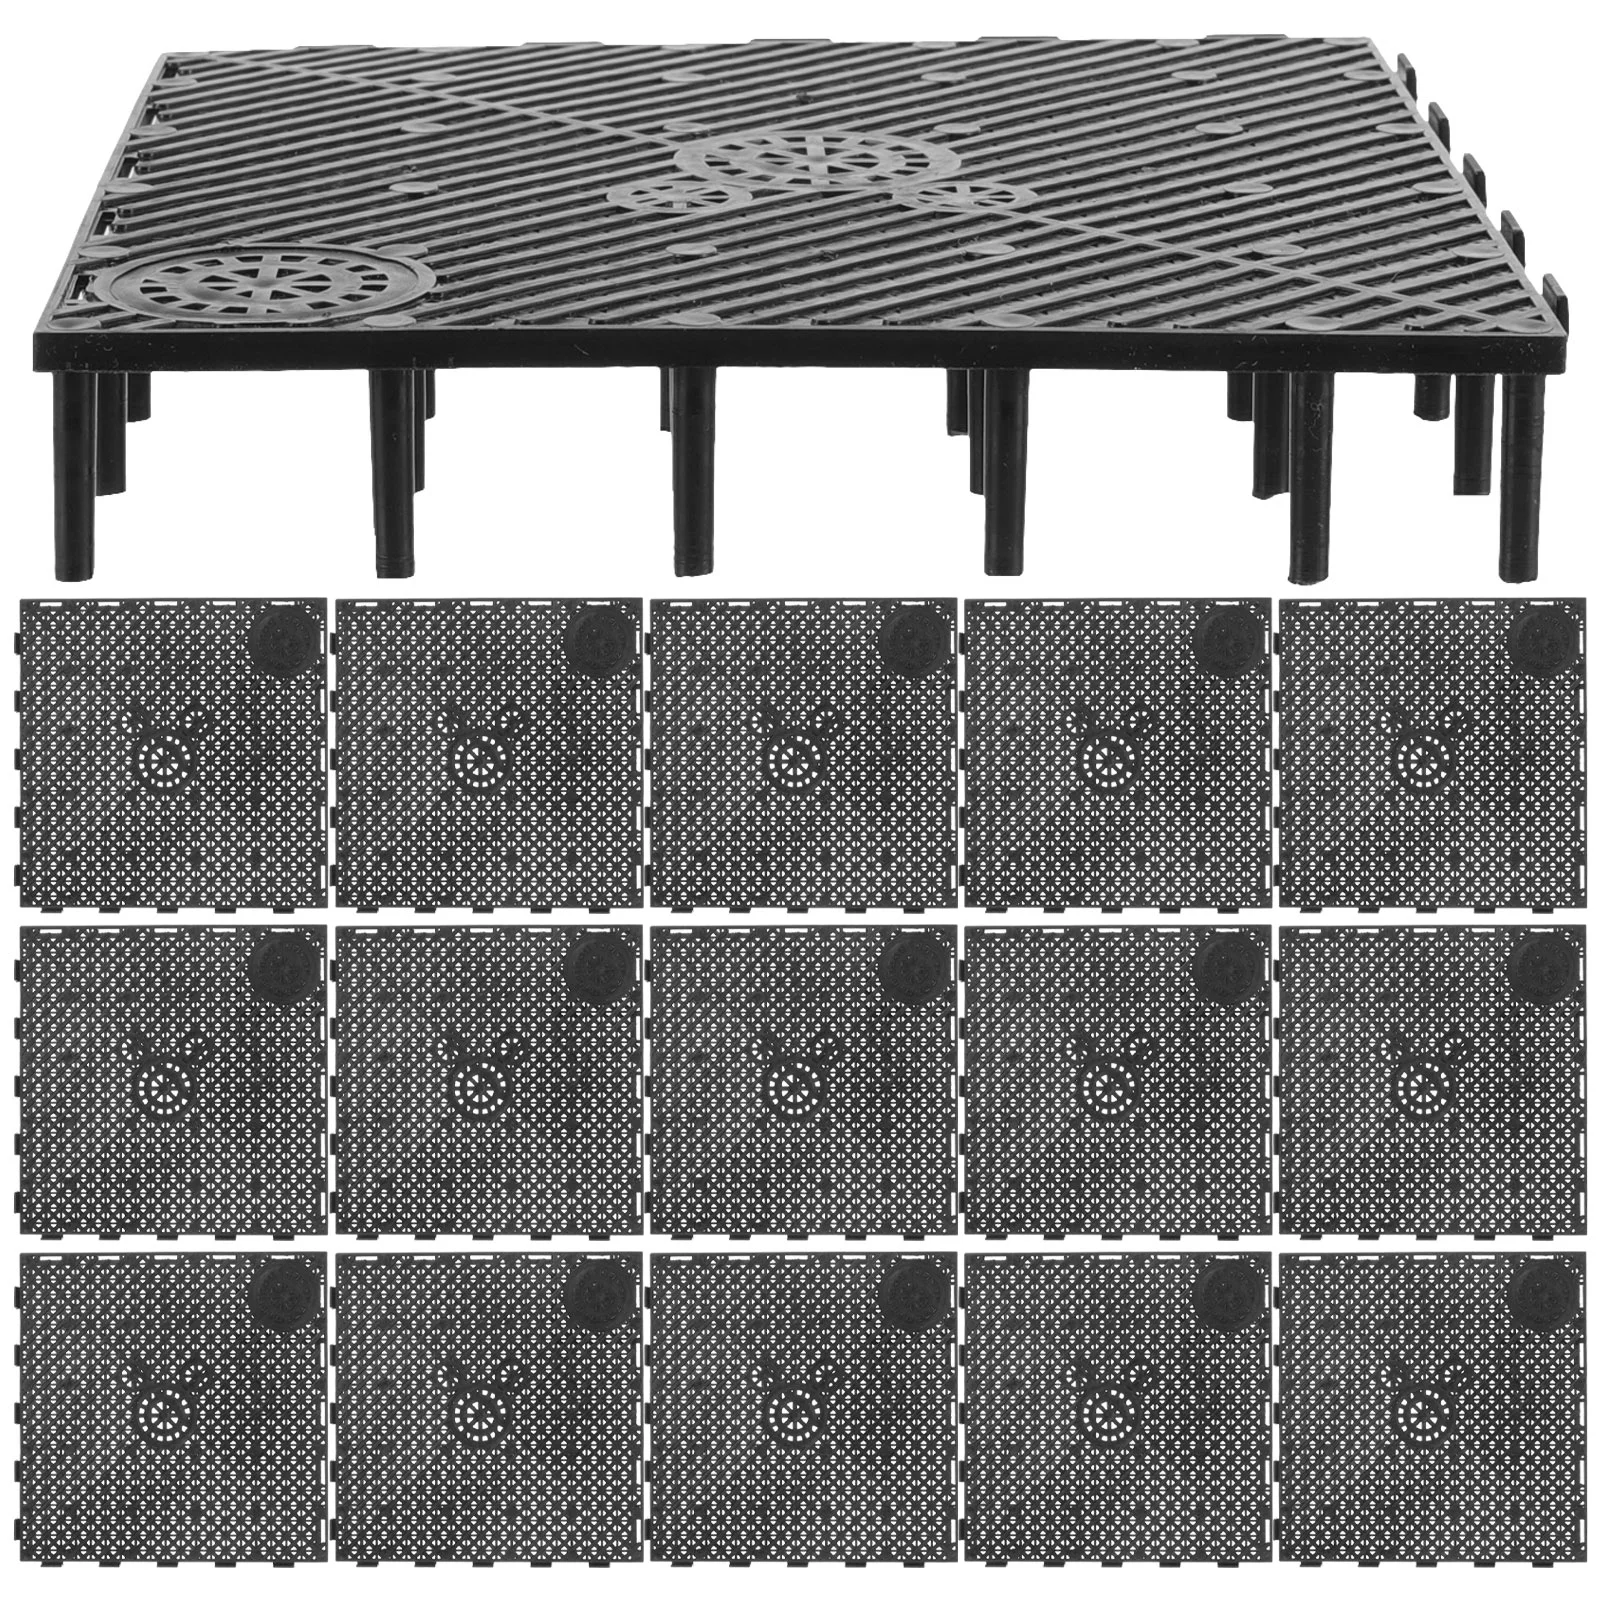 

Aquarium Bottom Grid: Plate Tank Bottom Filter Aquarium Undergravel Filter Board Divider Tank Bottom- Black